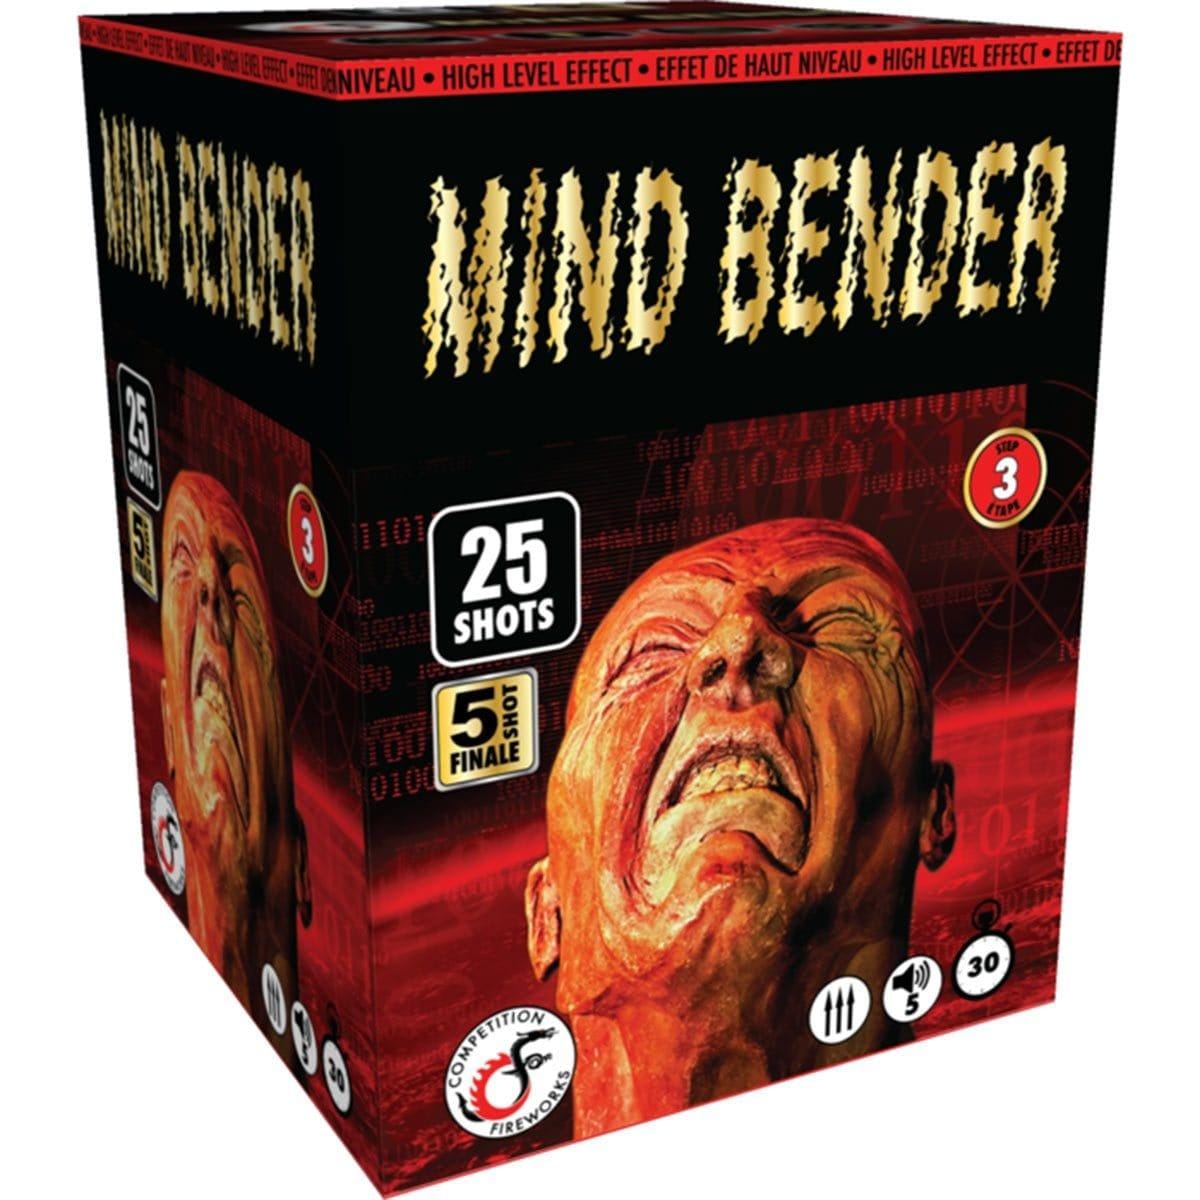 Buy Fireworks Mind Bender sold at Party Expert